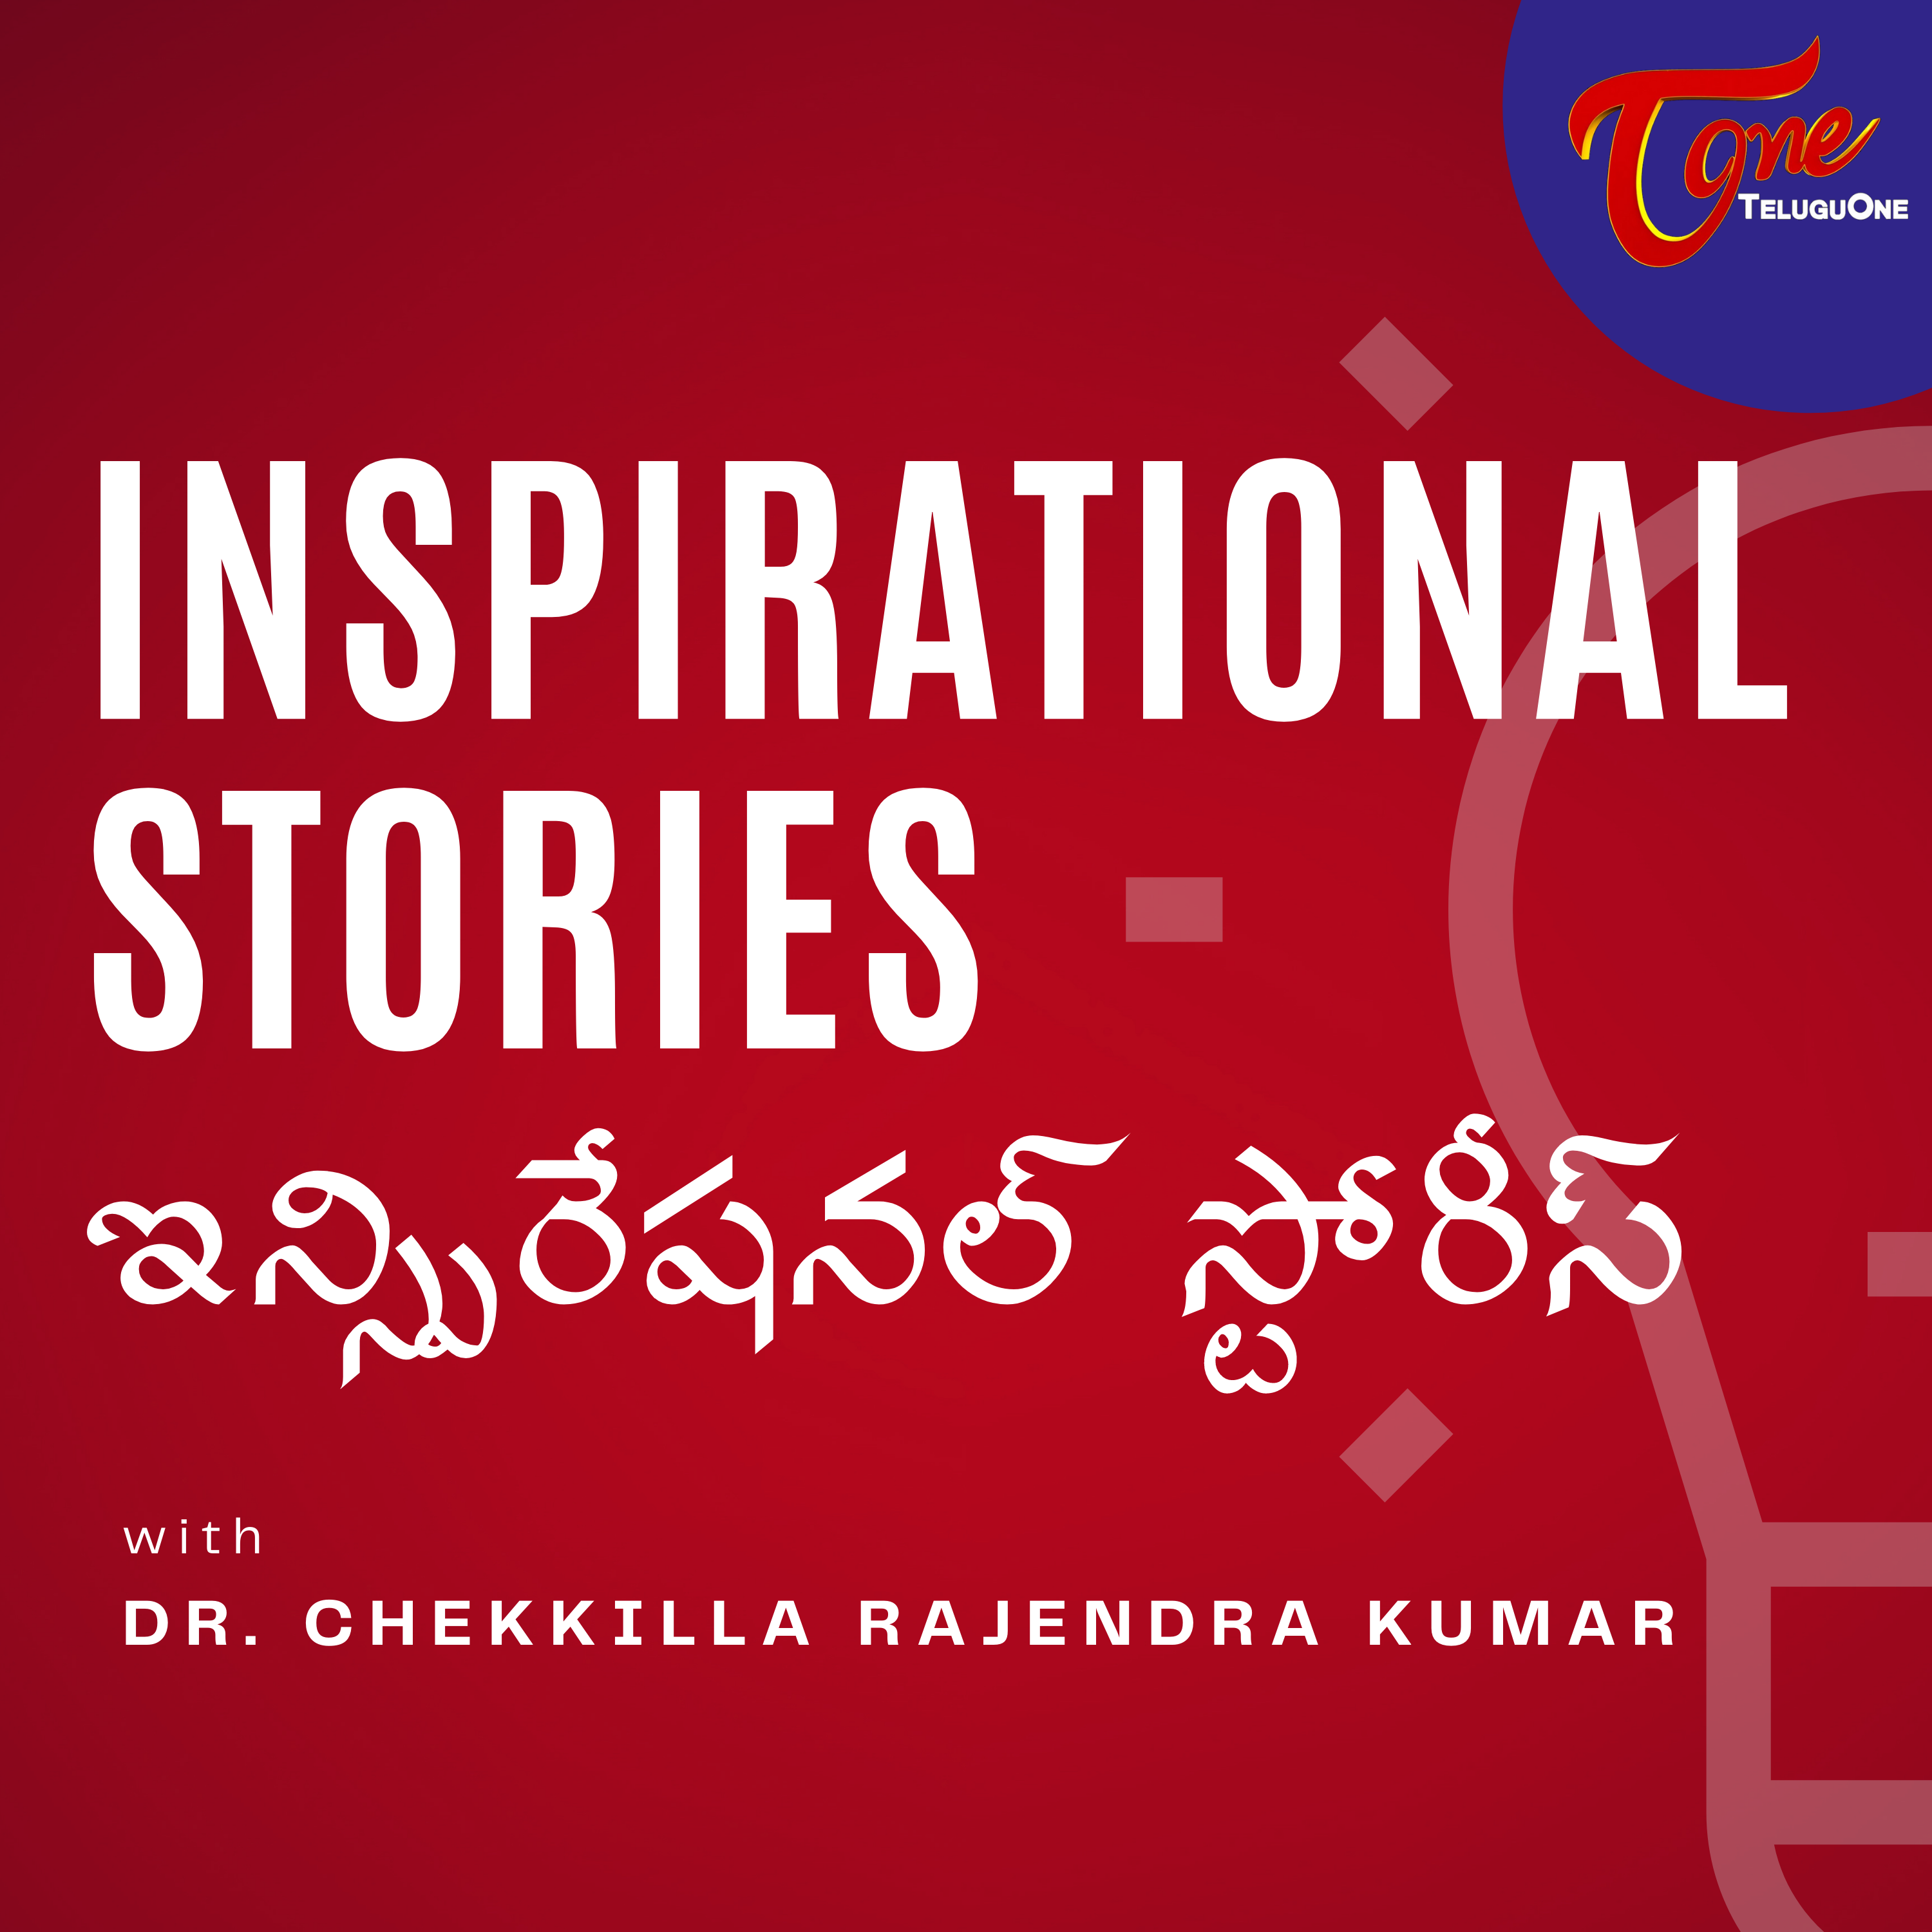 EP27. కుక్క, గాడిద, మనిషికి ఉన్న తేడాలేమిటో చూడండి | Telugu Podcast